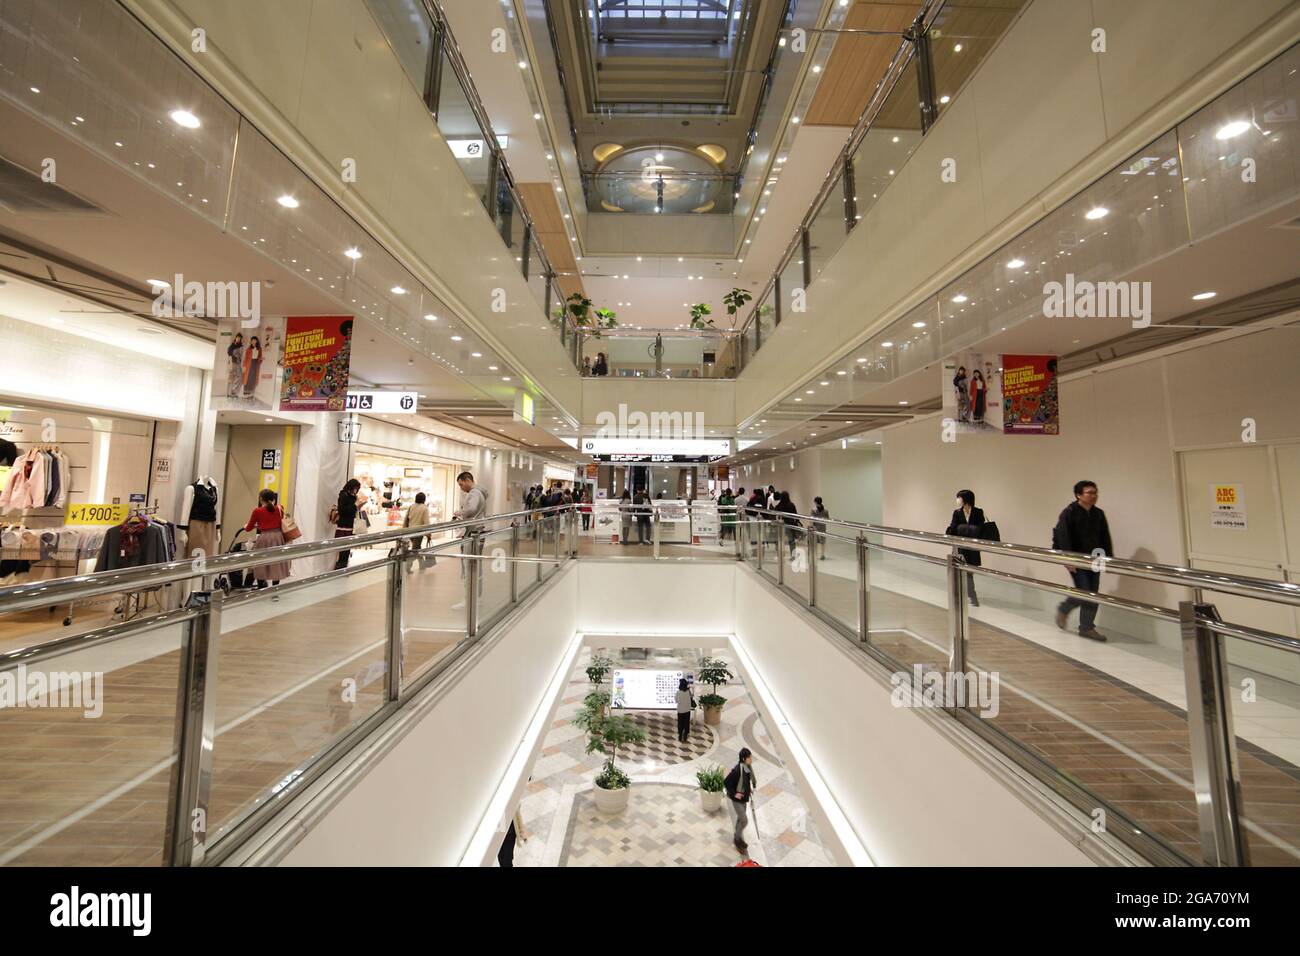 Japan. Oktober 2017. Geschäfte und Einkäufer sind in Ikebukuro Sunshine City, einem Einkaufskomplex im Ikebukuro-Bezirk, Toshima, Tokio, Japan, im Oktober 16, 2017. (Foto: Smith Collection/Gado/Sipa USA) Quelle: SIPA USA/Alamy Live News Stockfoto